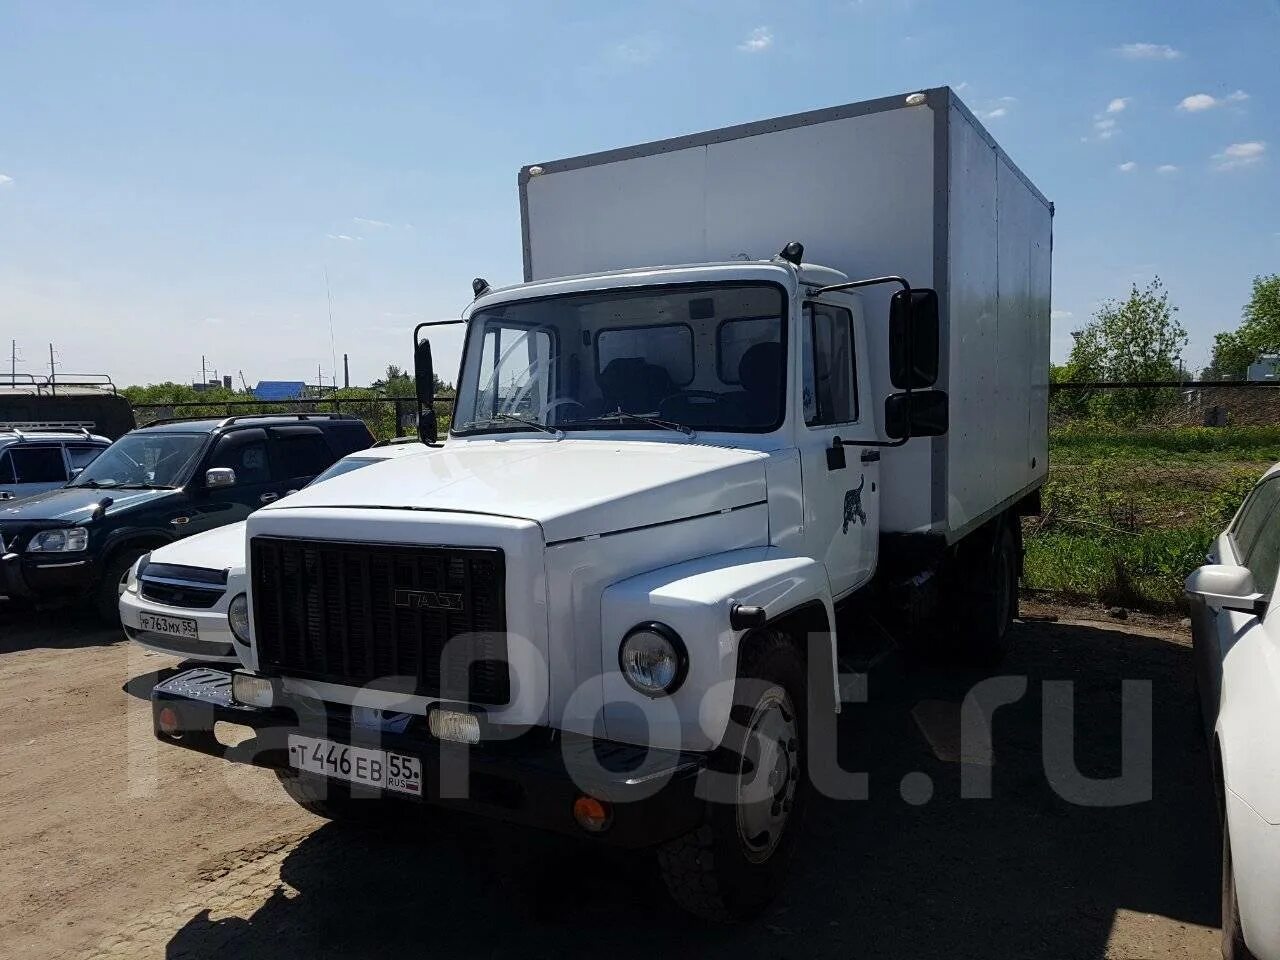 Эвакуатор ГАЗ 3309 бу 4х4. Купить ГАЗ 3309 бу в Минске с реализации.